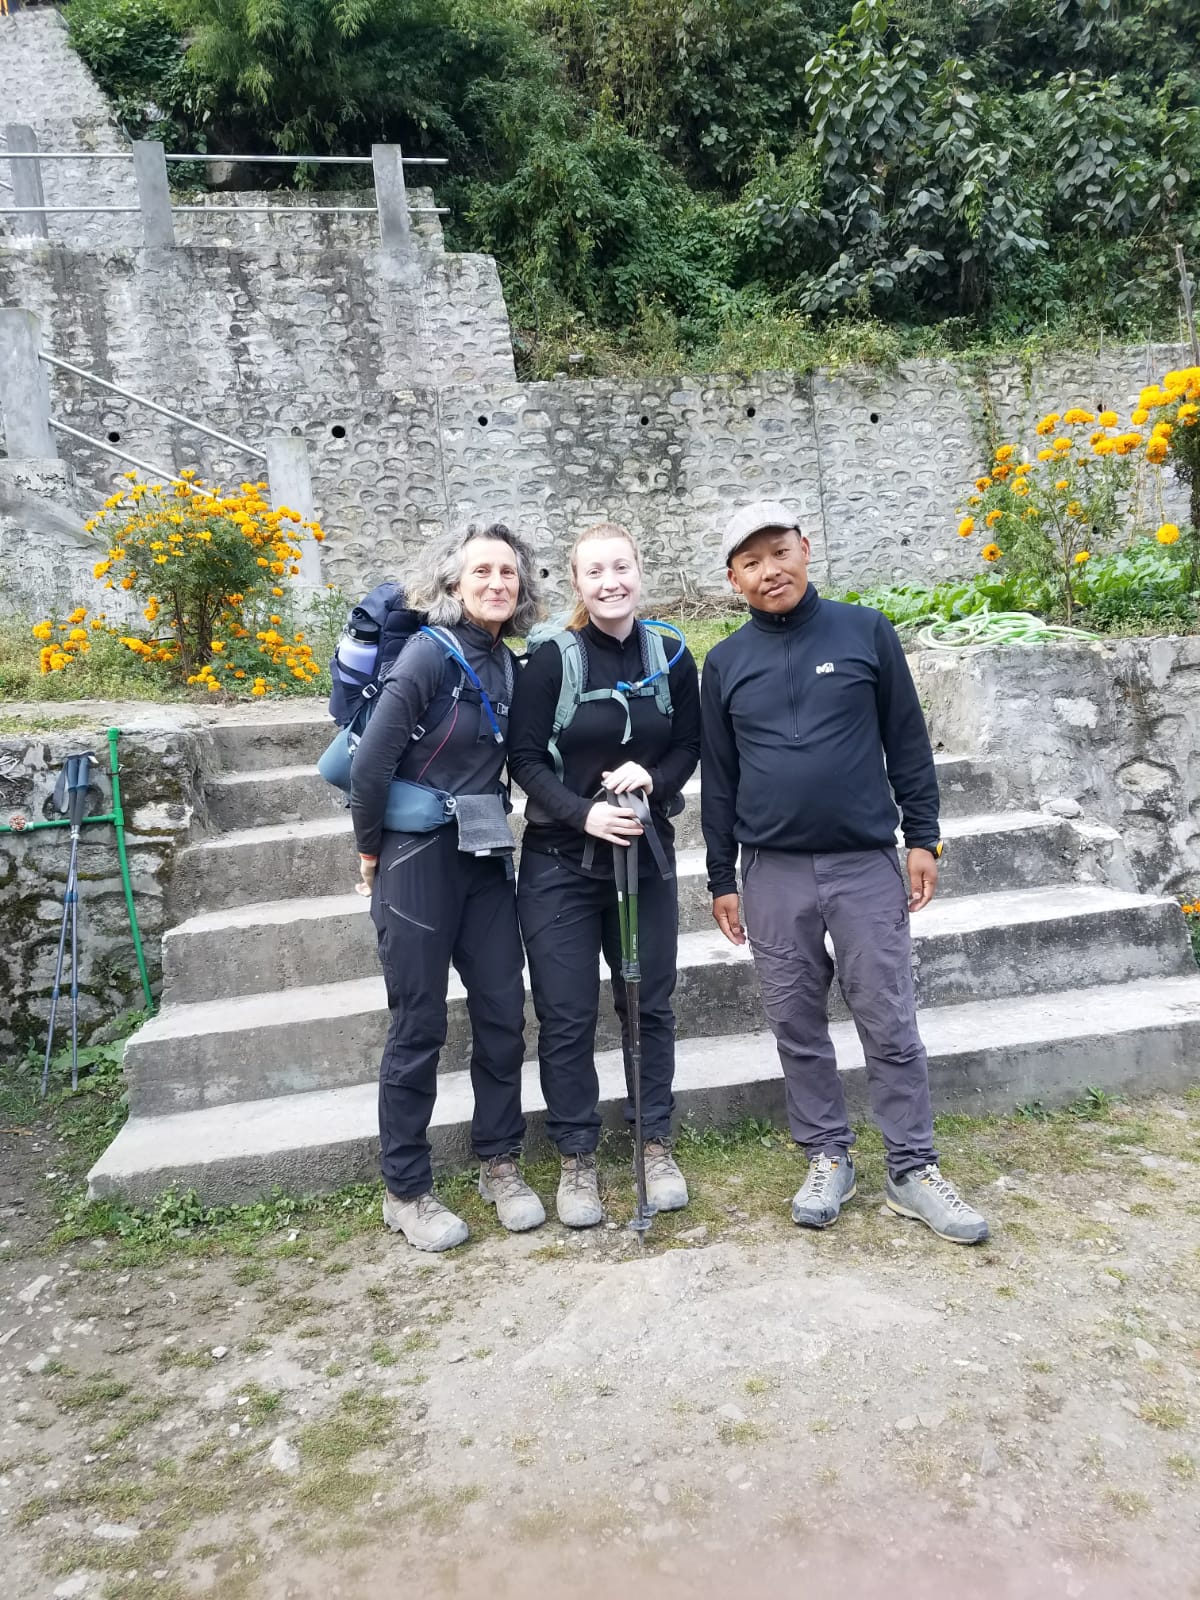 Tour des Annapurnas